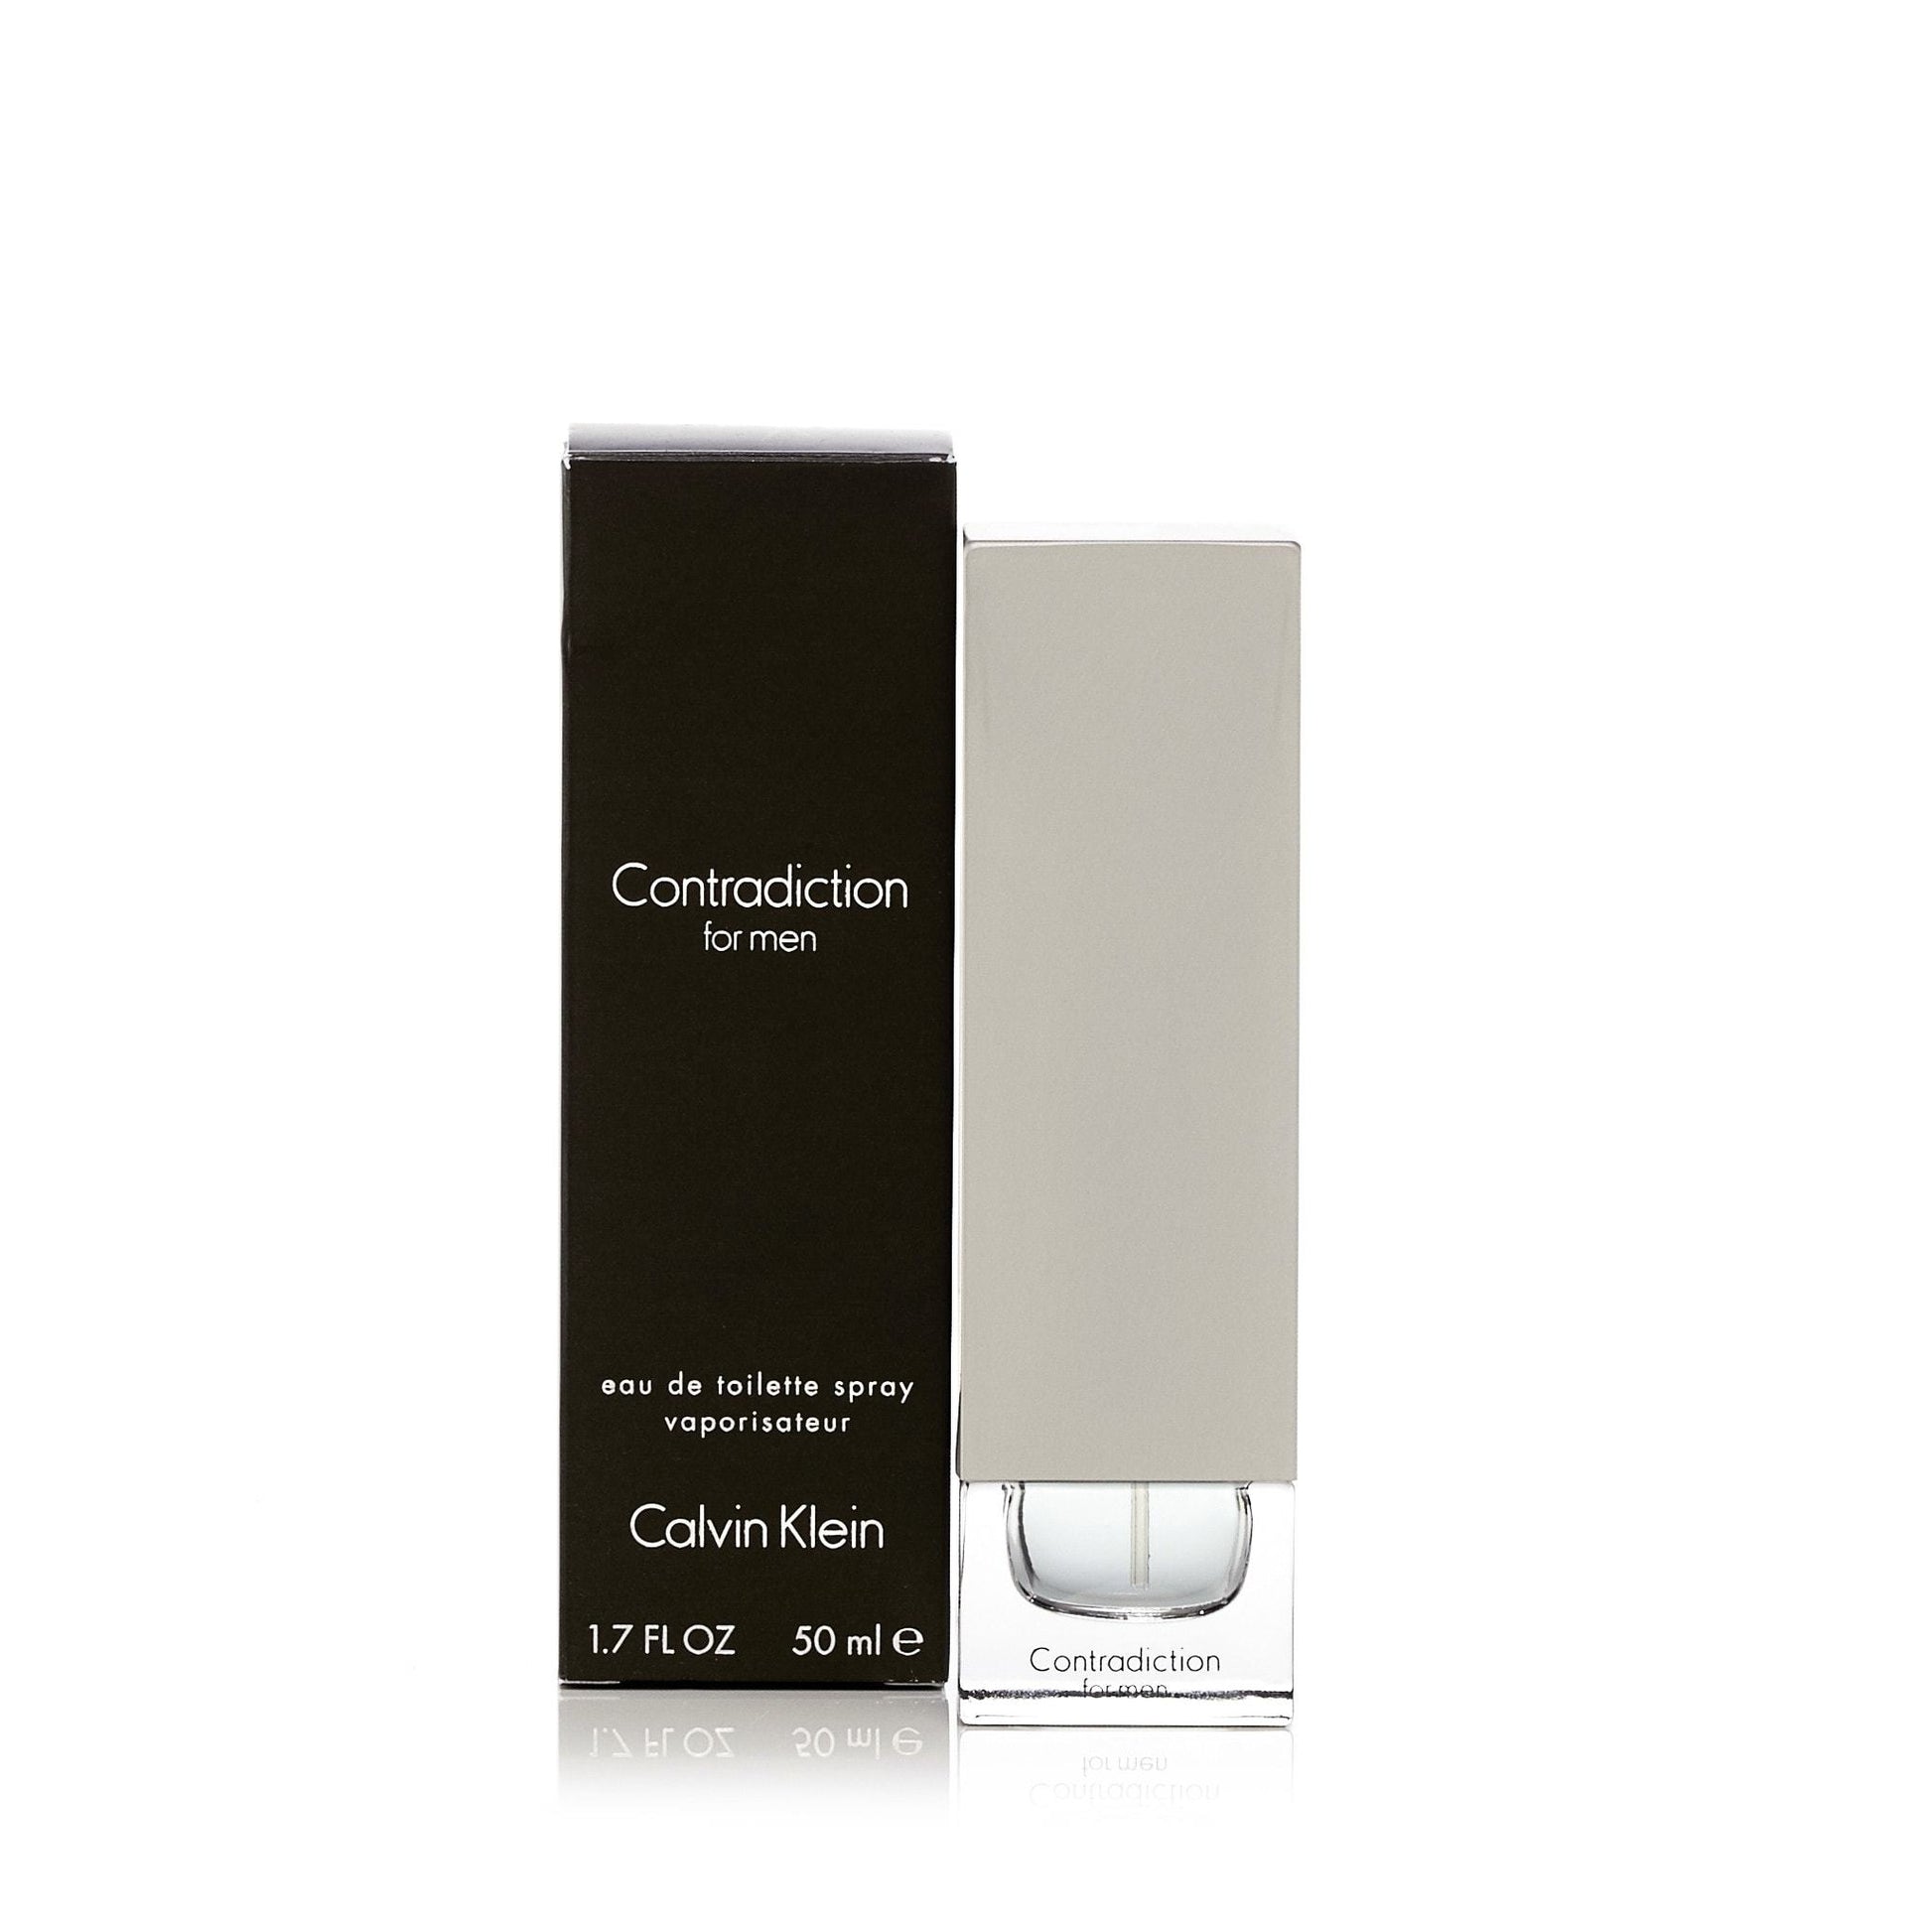 Contradiction Eau de Toilette Spray for Men by Calvin Klein, Product image 3